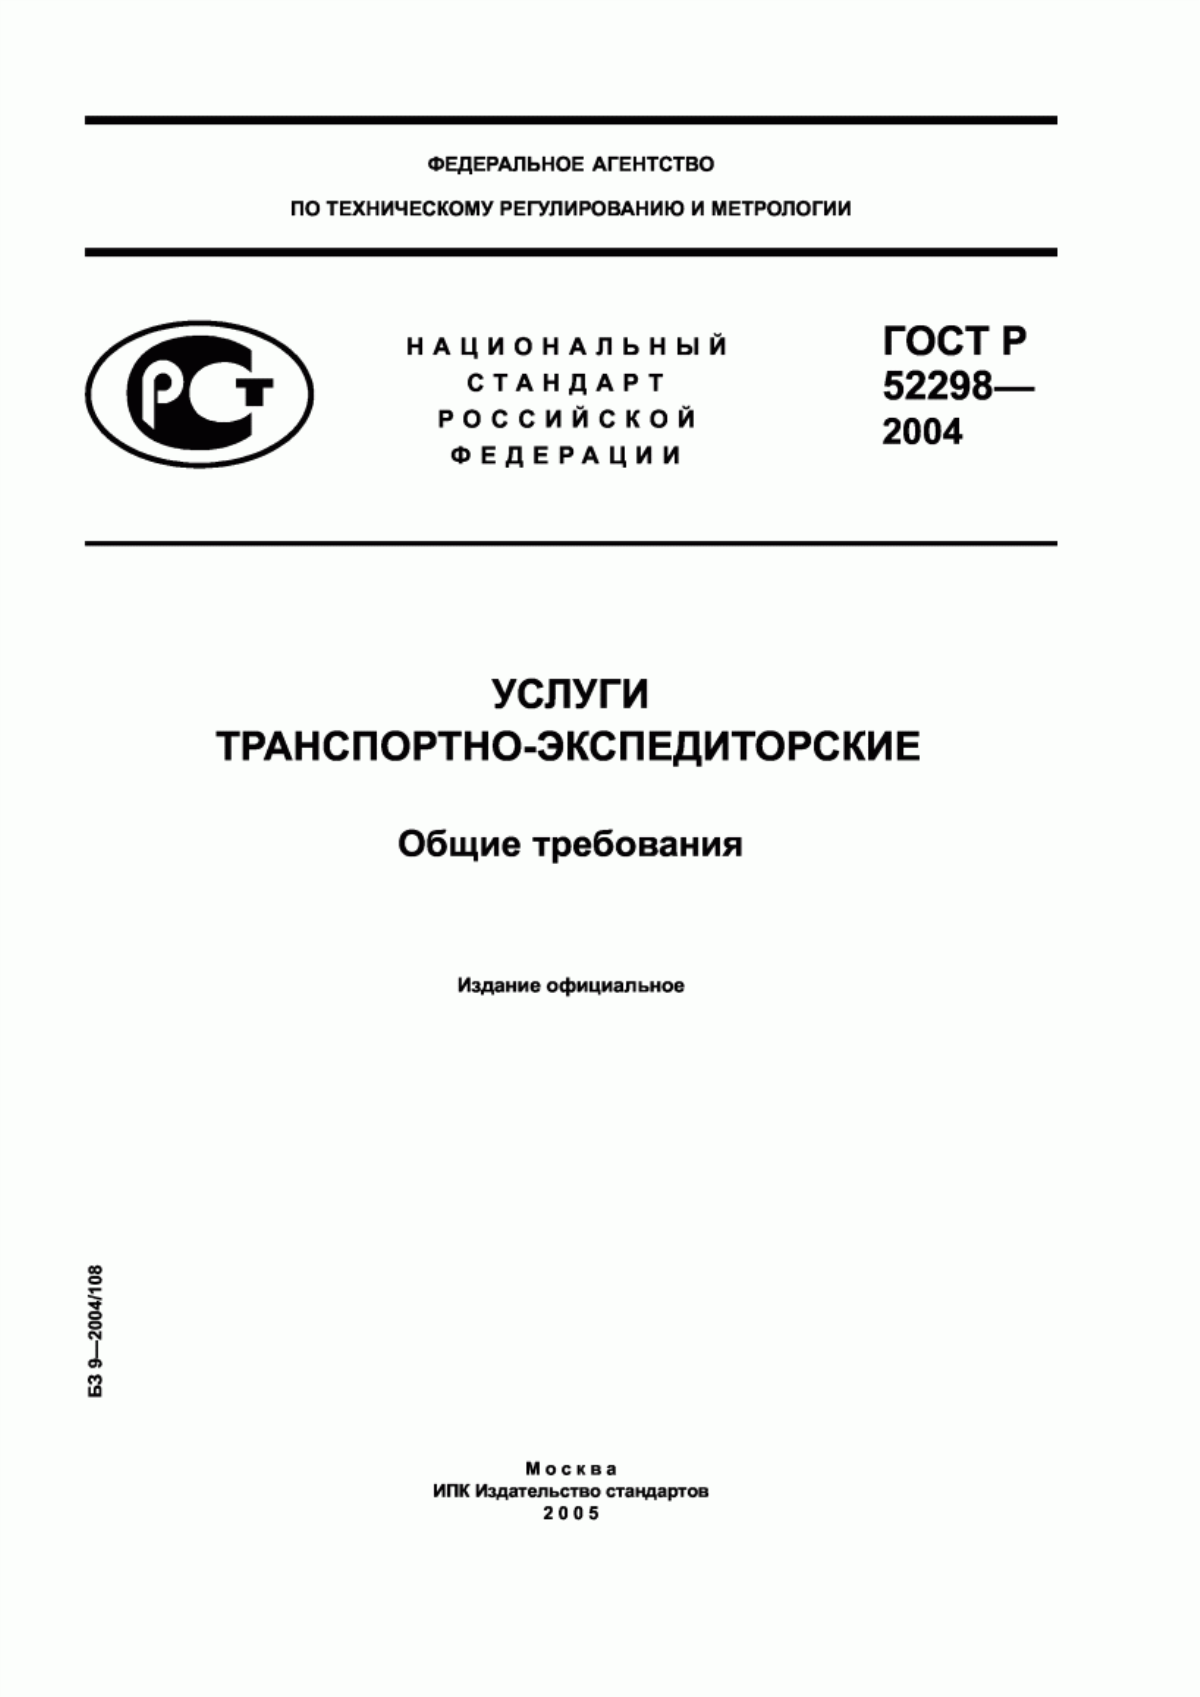 ГОСТ Р 52298-2004 Услуги транспортно-экспедиторские. Общие требования